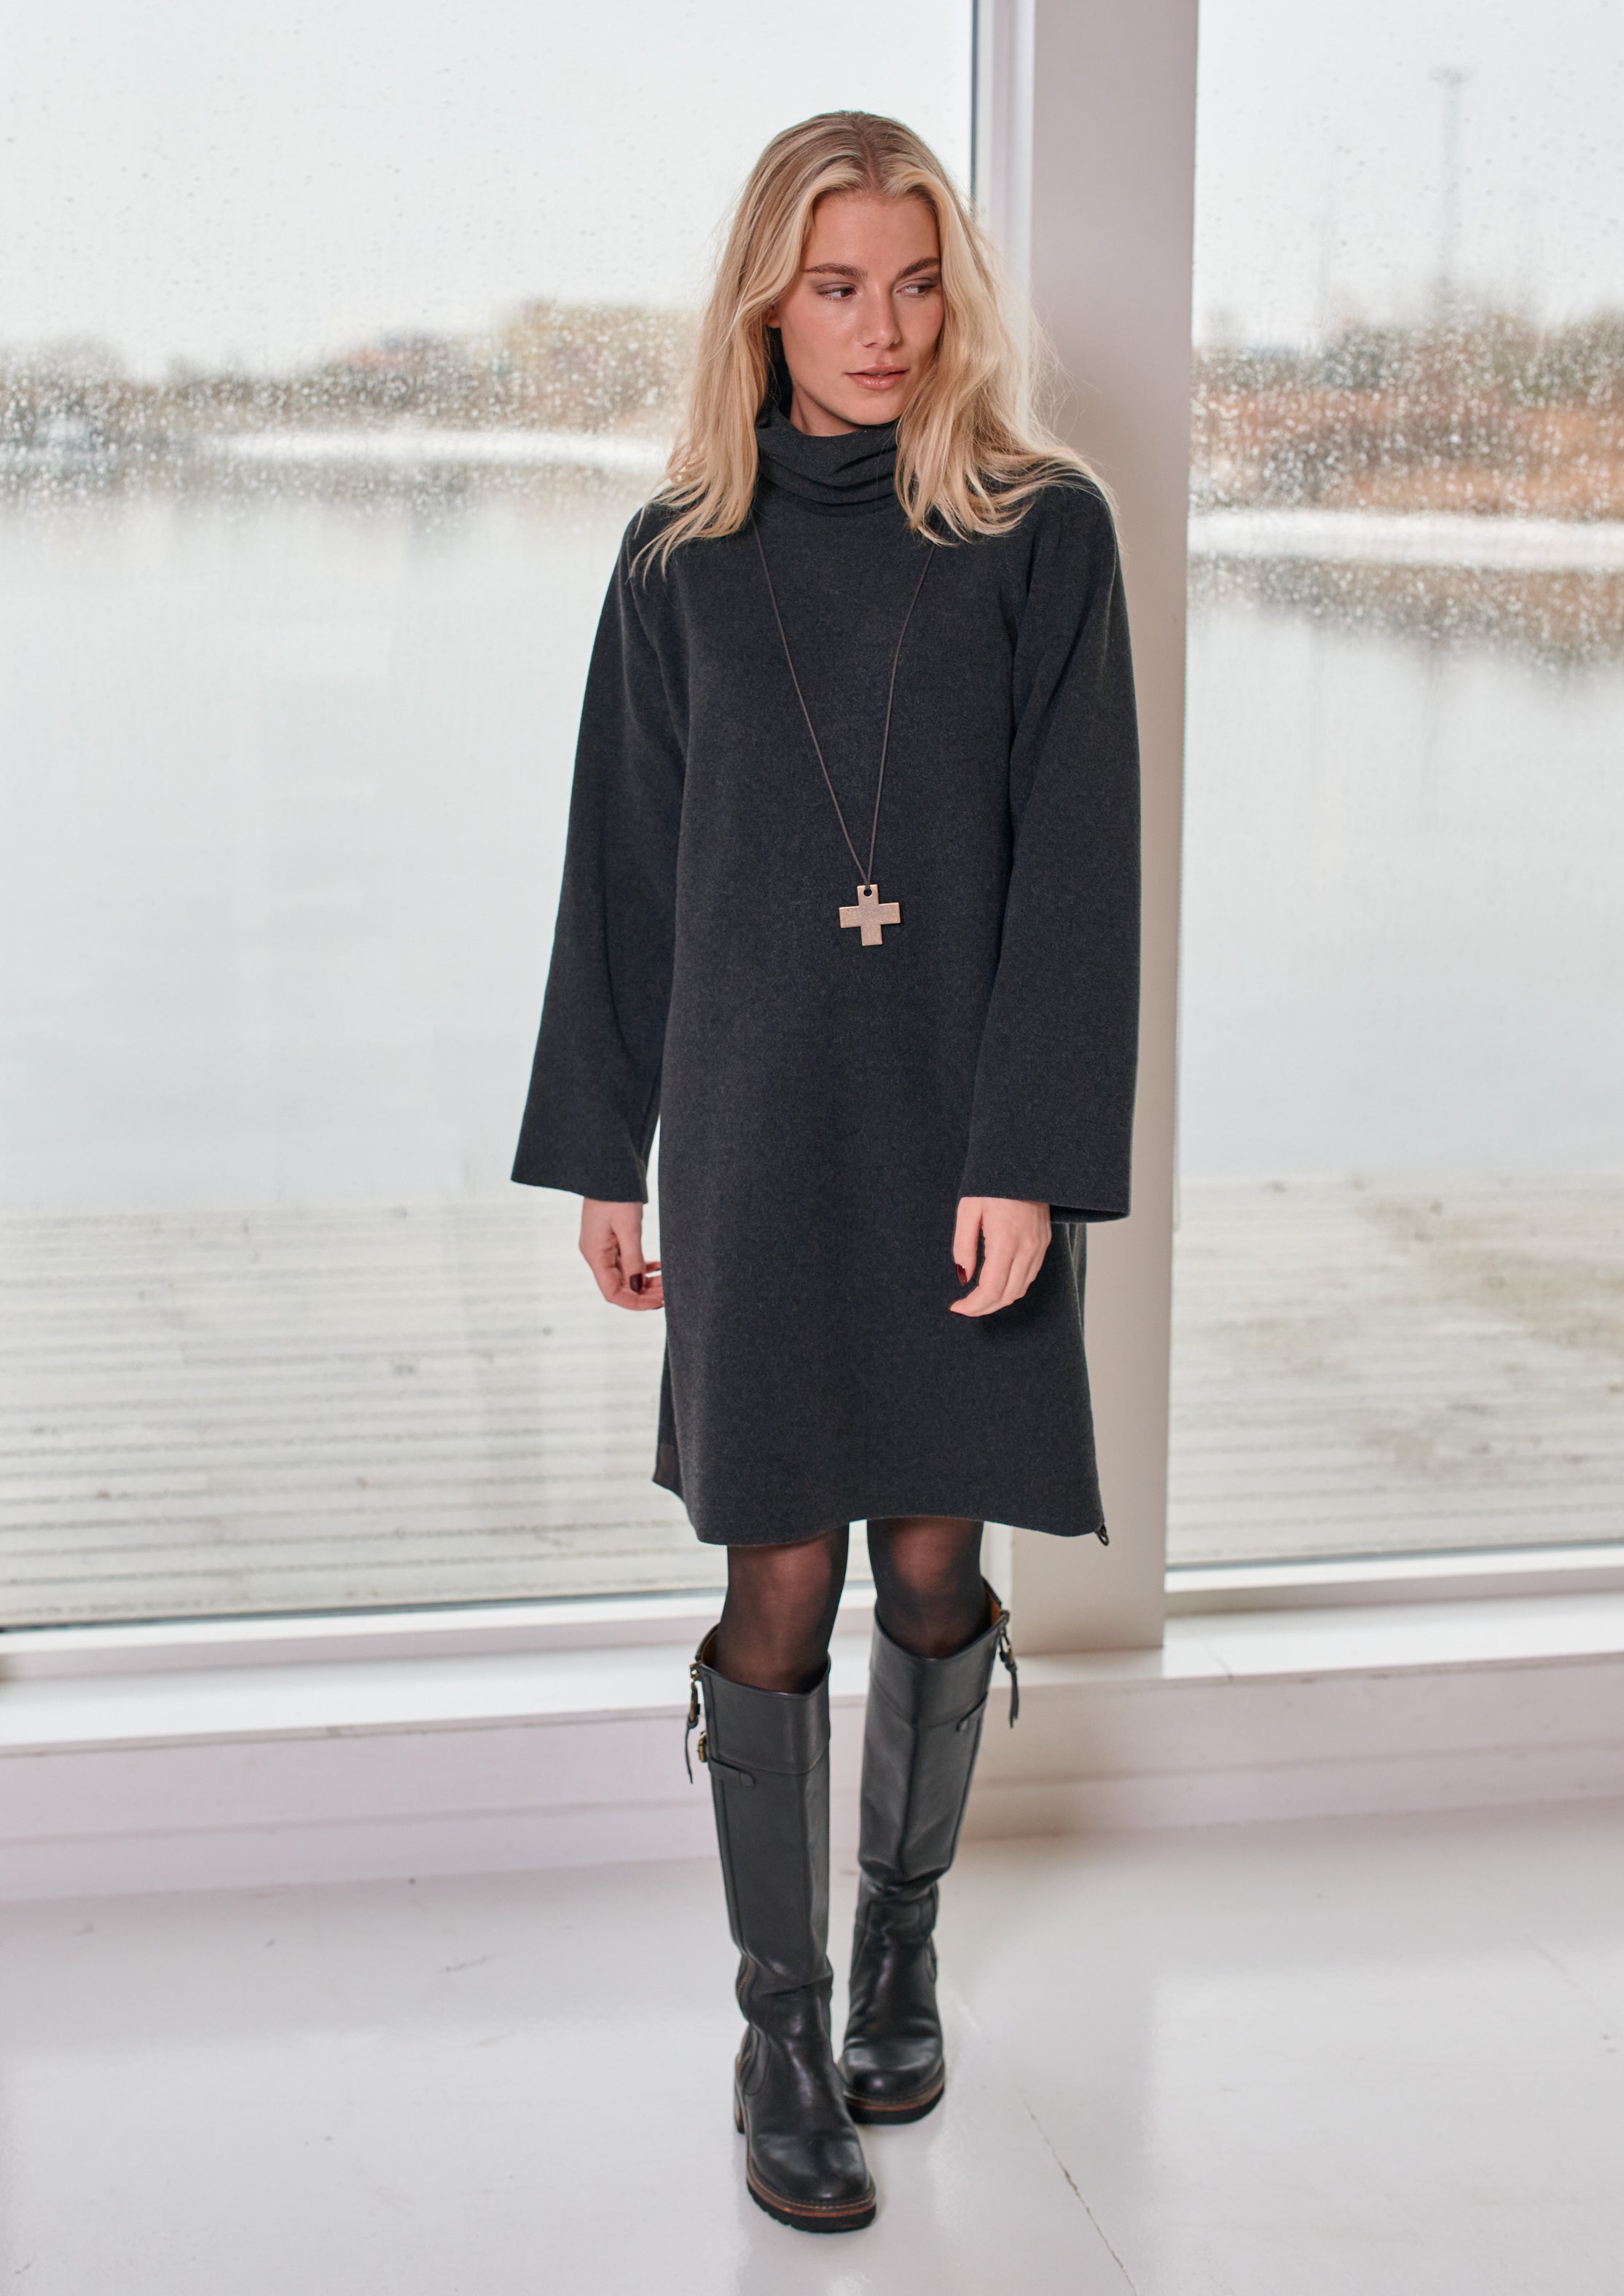 HENRIETTE STEFFENSEN COPENHAGEN DRESS HIGH NECK - 3246 DRESSES fleece SOFT BLACK 914